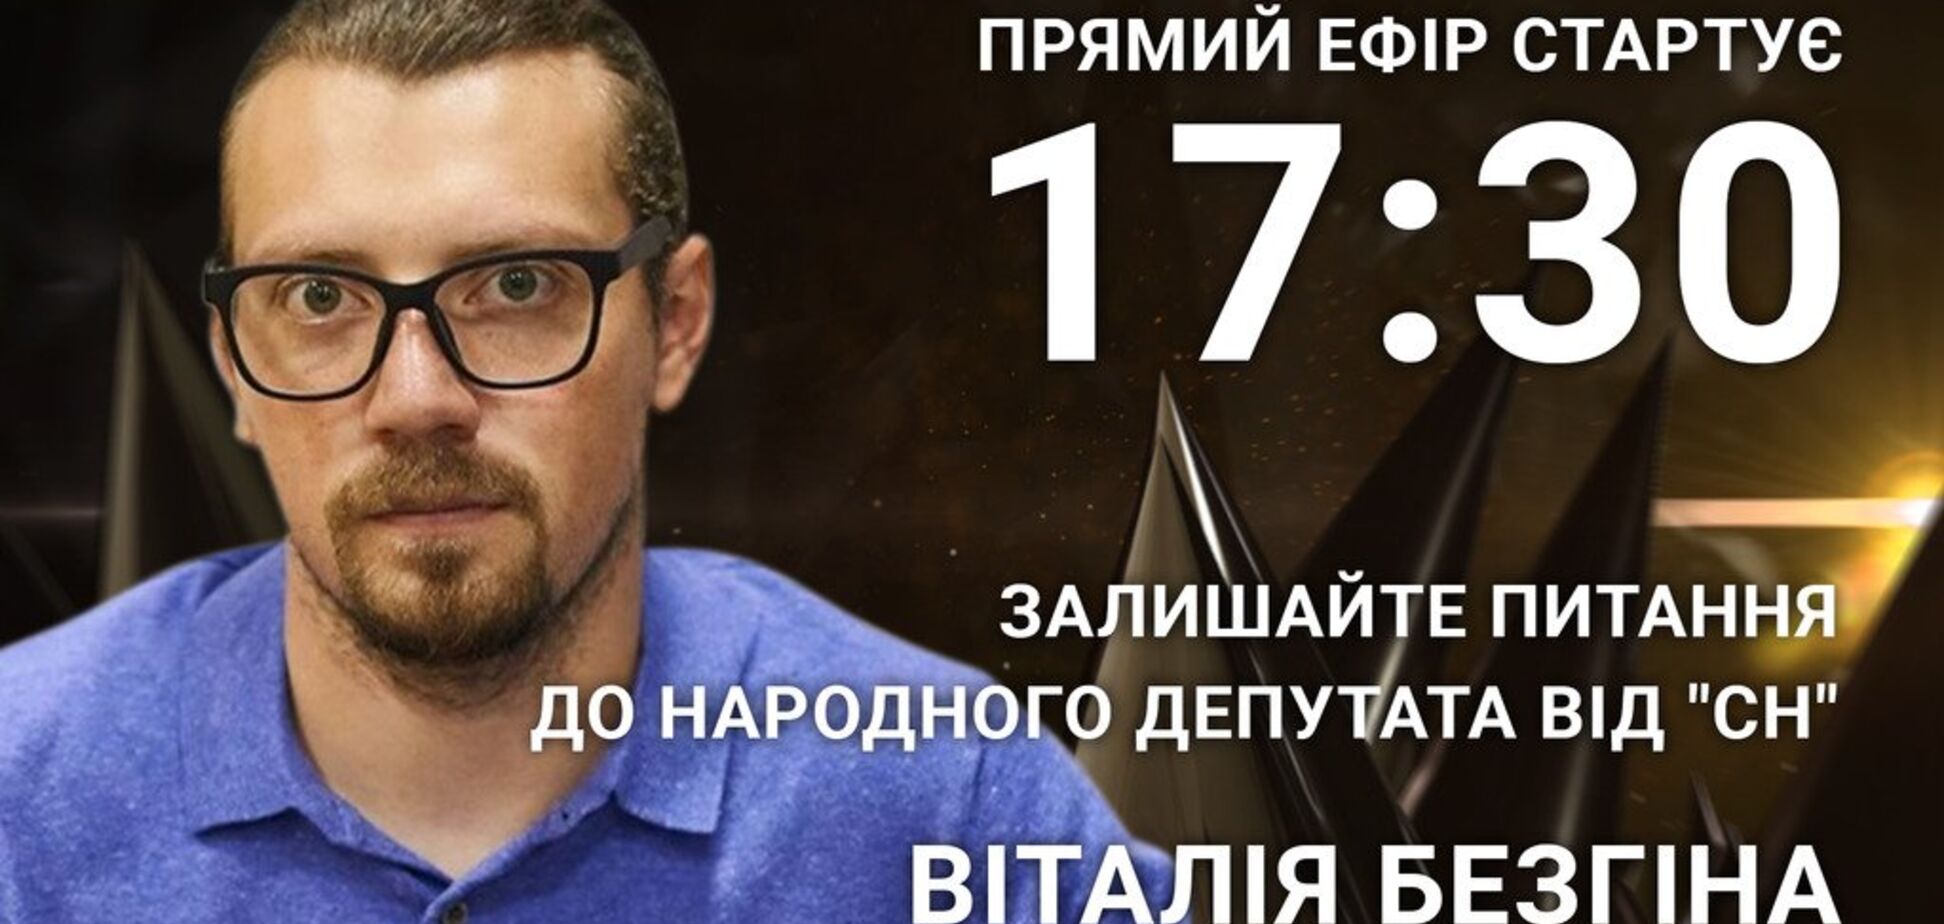 Виталий Безгин: задайте острый вопрос 'слуге народа'